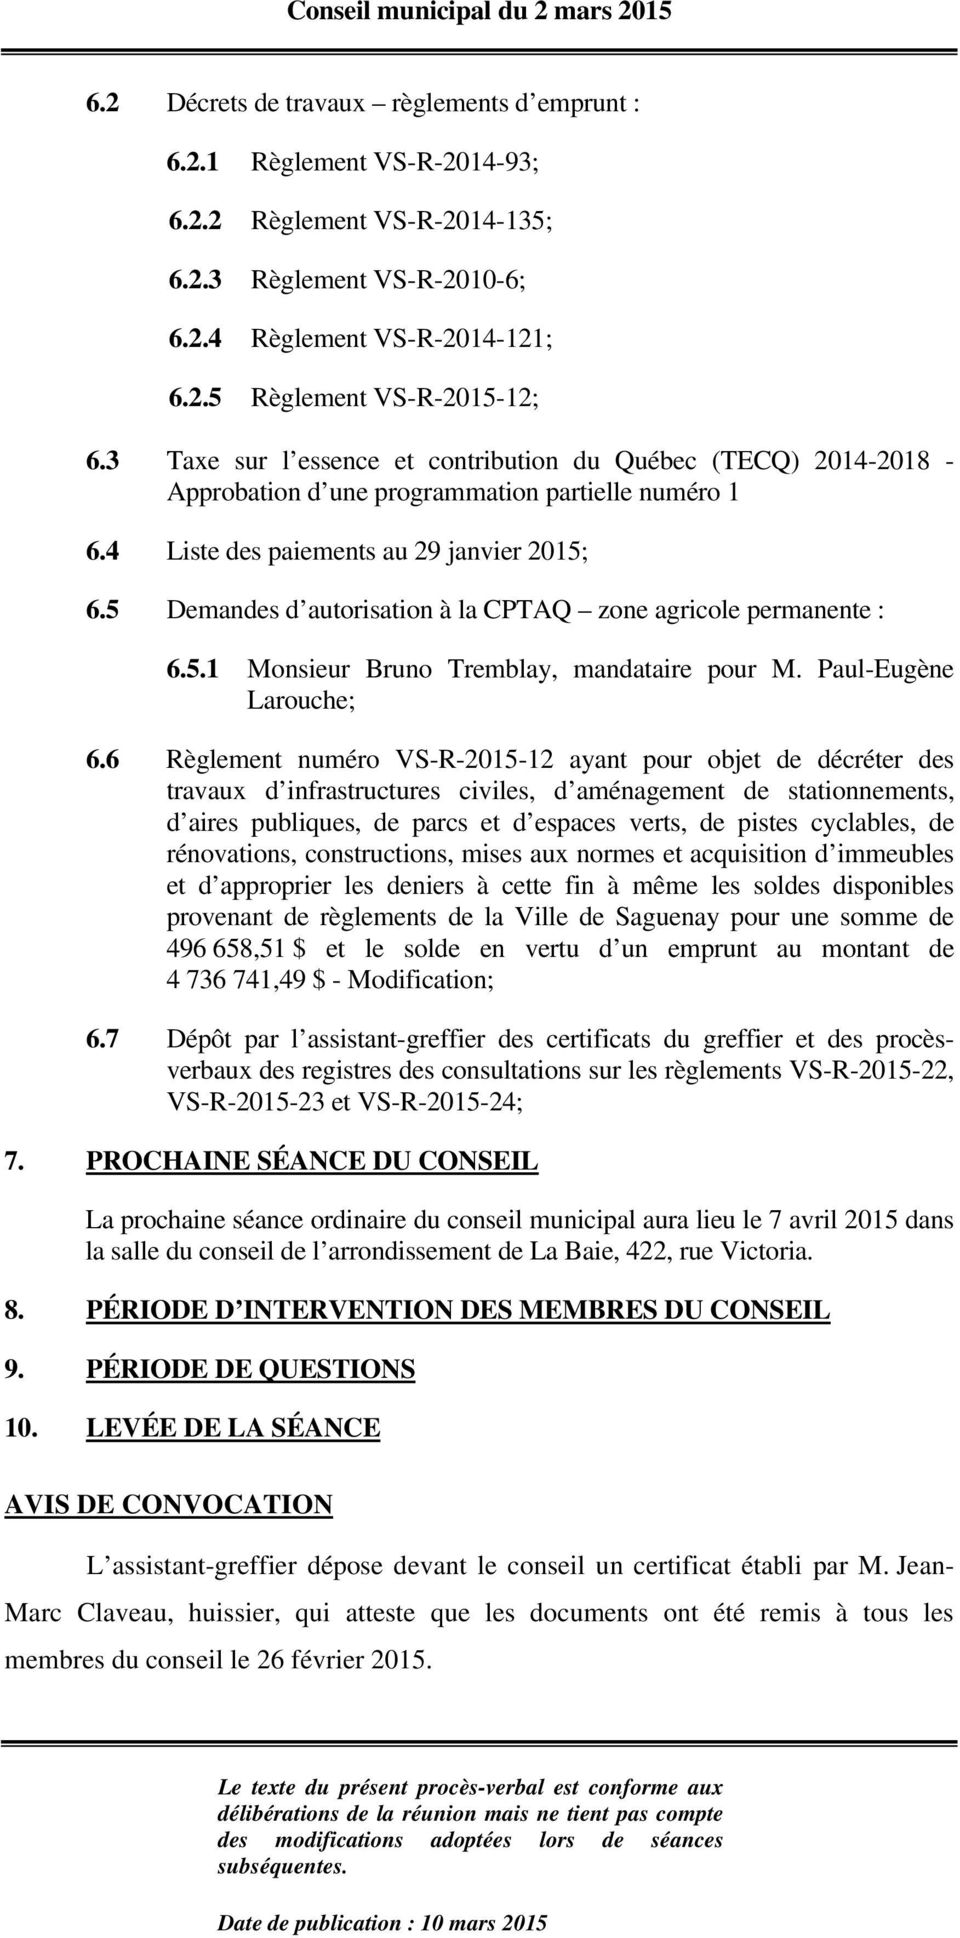 5 Demandes d autorisation à la CPTAQ zone agricole permanente : 6.5.1 Monsieur Bruno Tremblay, mandataire pour M. Paul-Eugène Larouche; 6.